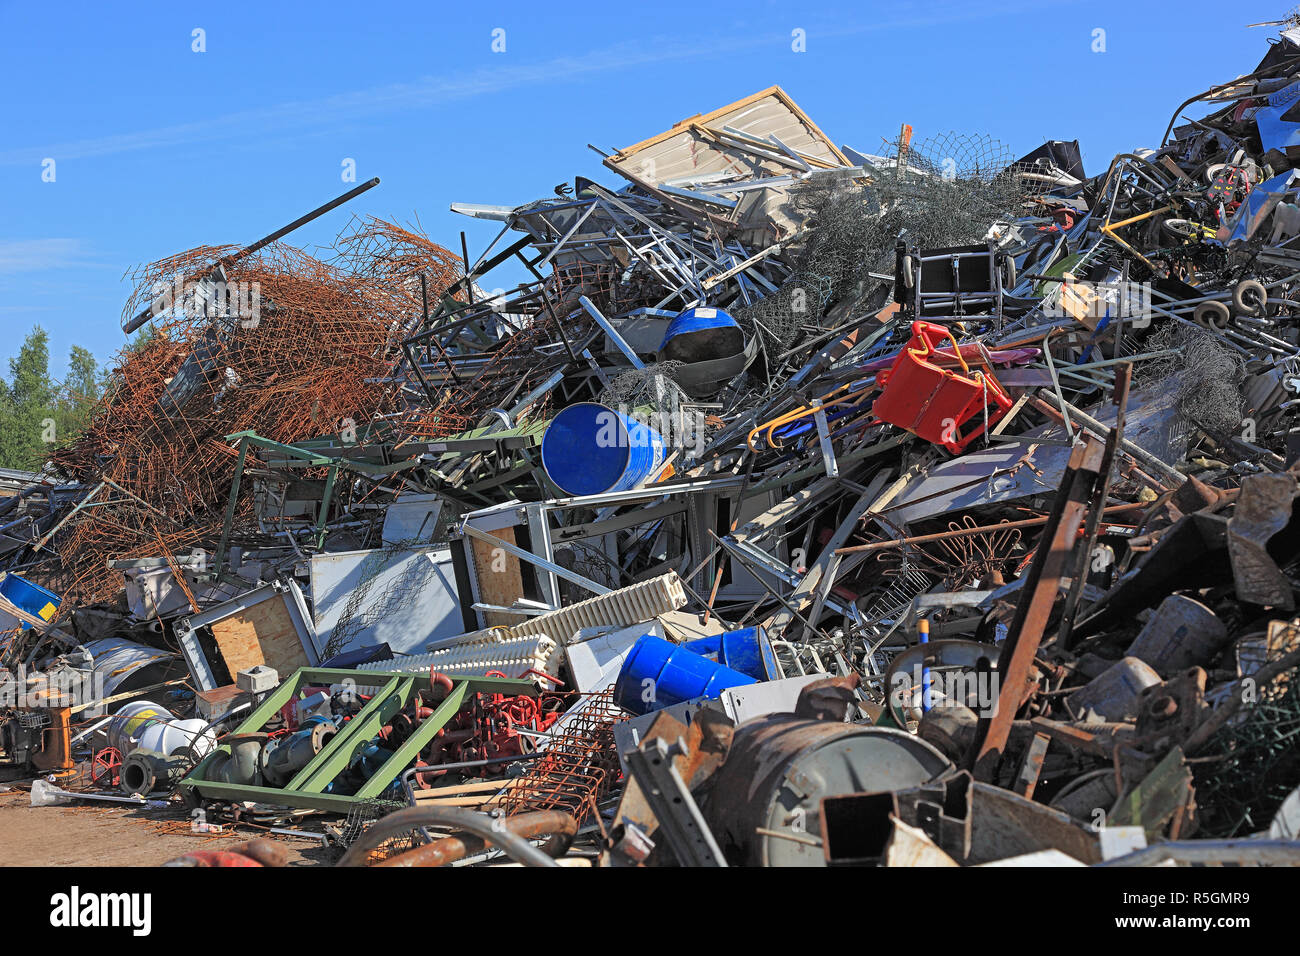 La ferraille, déchets de métaux dans une usine de recyclage, Allemagne Banque D'Images